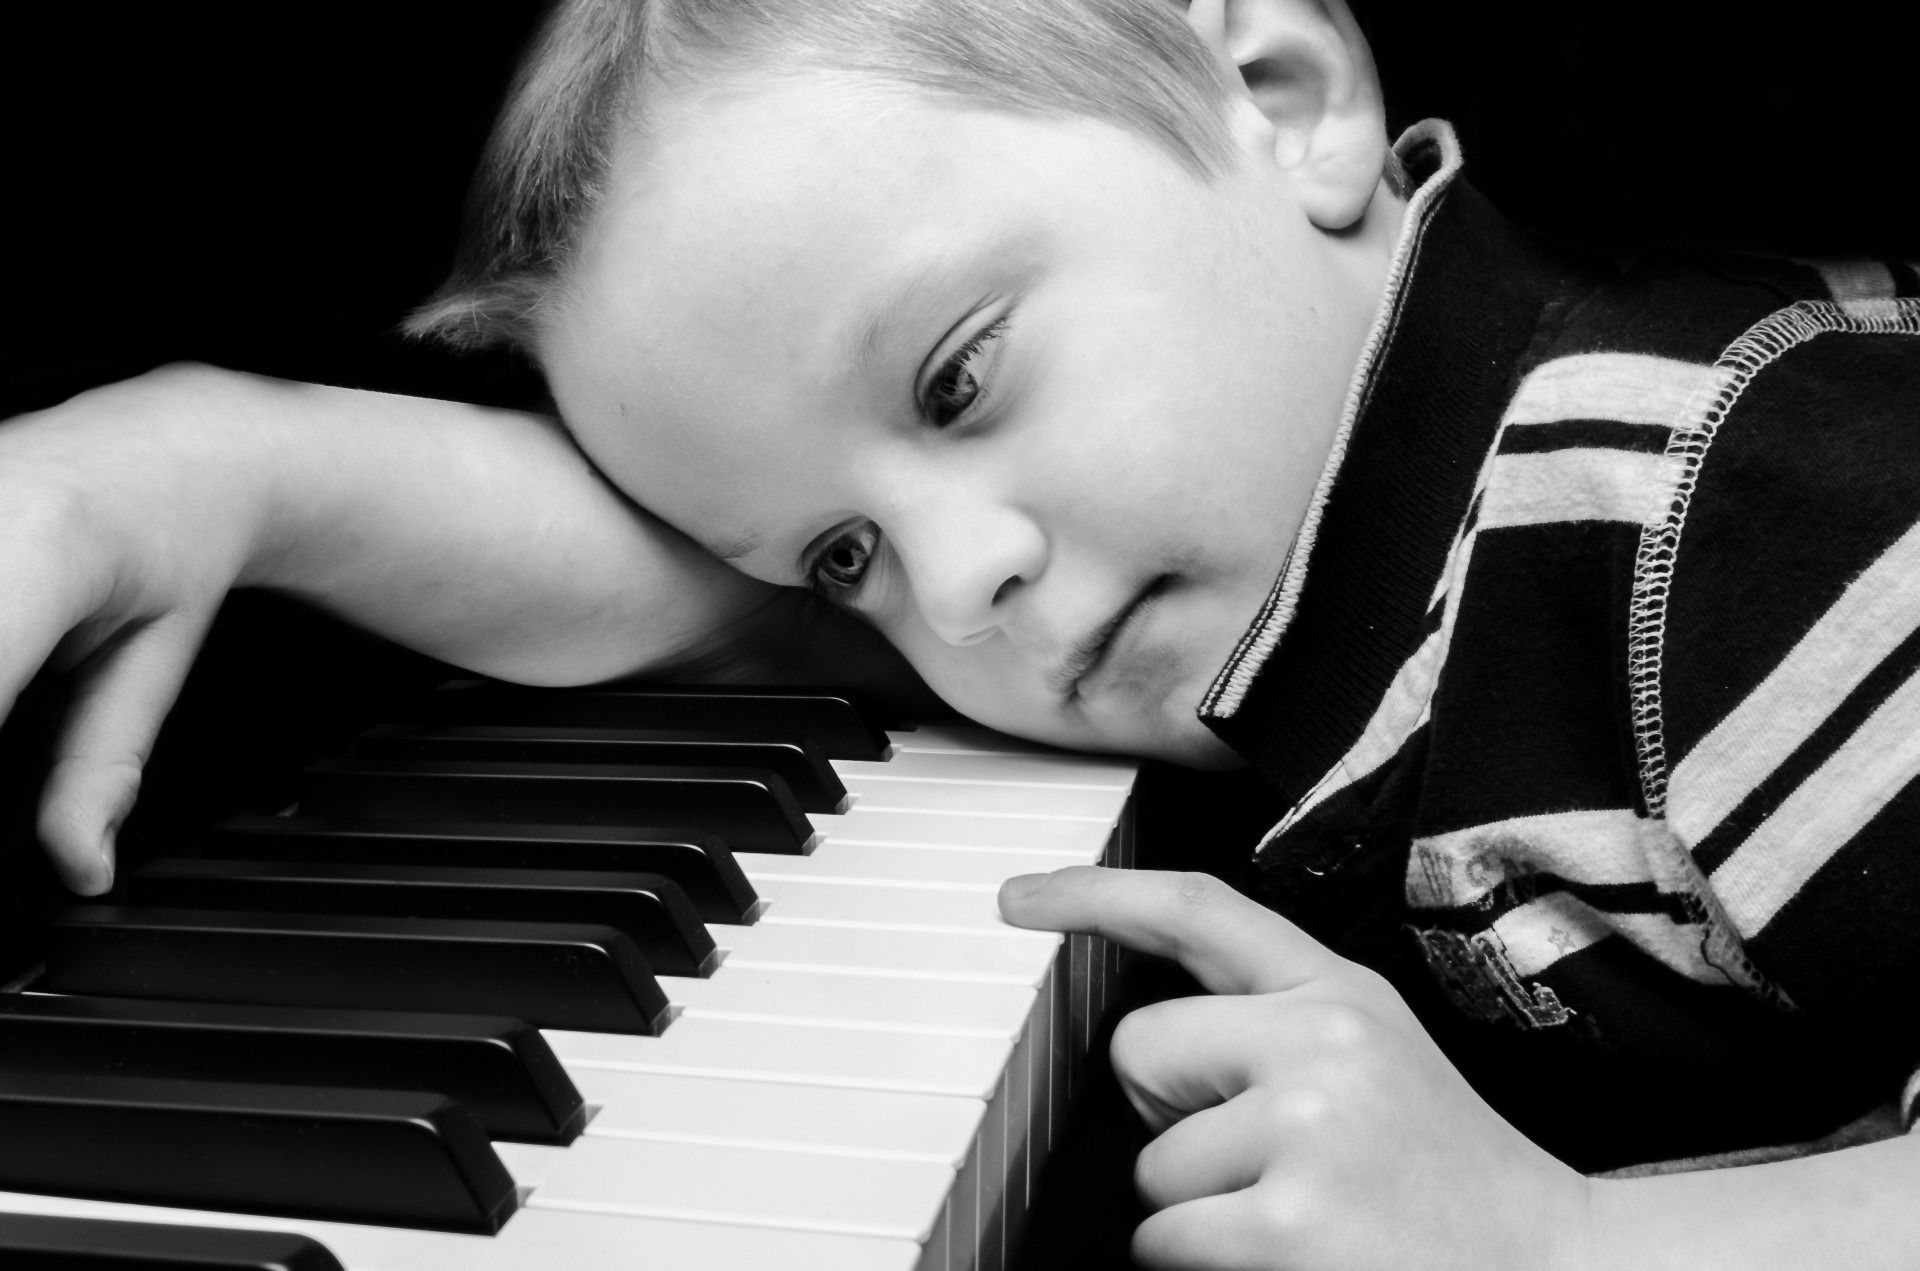 garçon triste fond d'écran hd pleine taille,piano,instrument de musique,pianiste,enfant,clavier musical